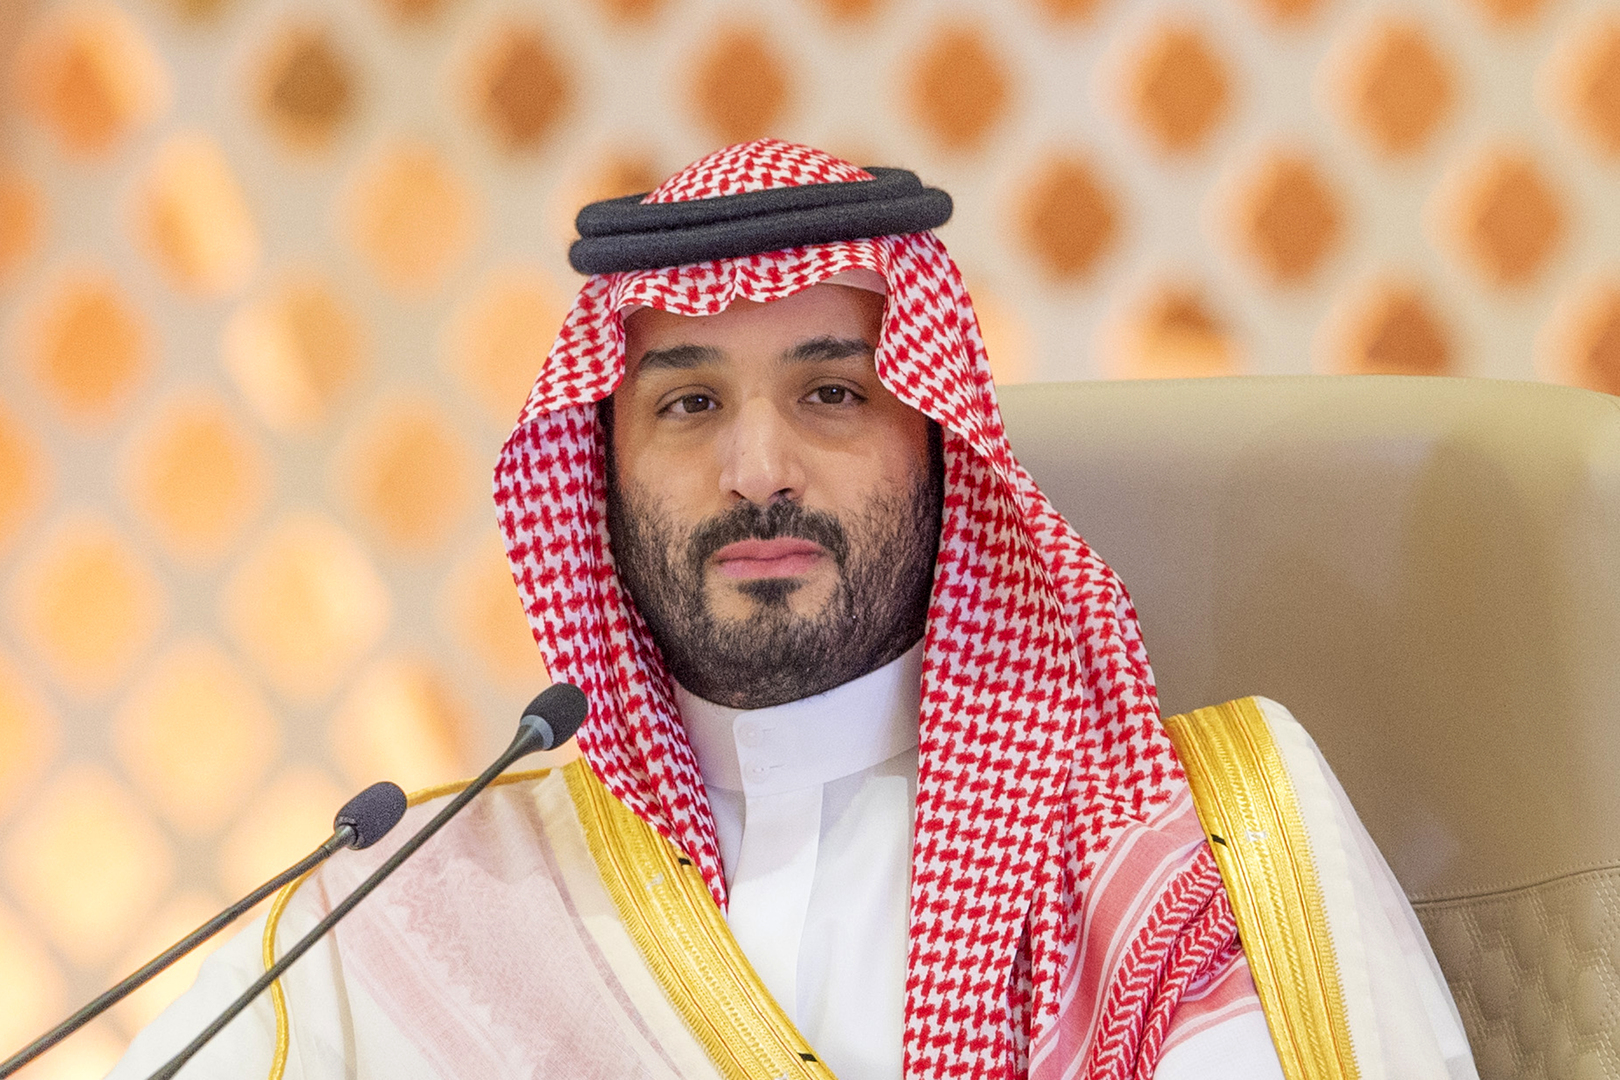 الأمير محمد بن سلمان يطلق استراتيجية جامعة الملك عبد الله للعلوم والتقنية الجديدة.. فما أهدافها؟